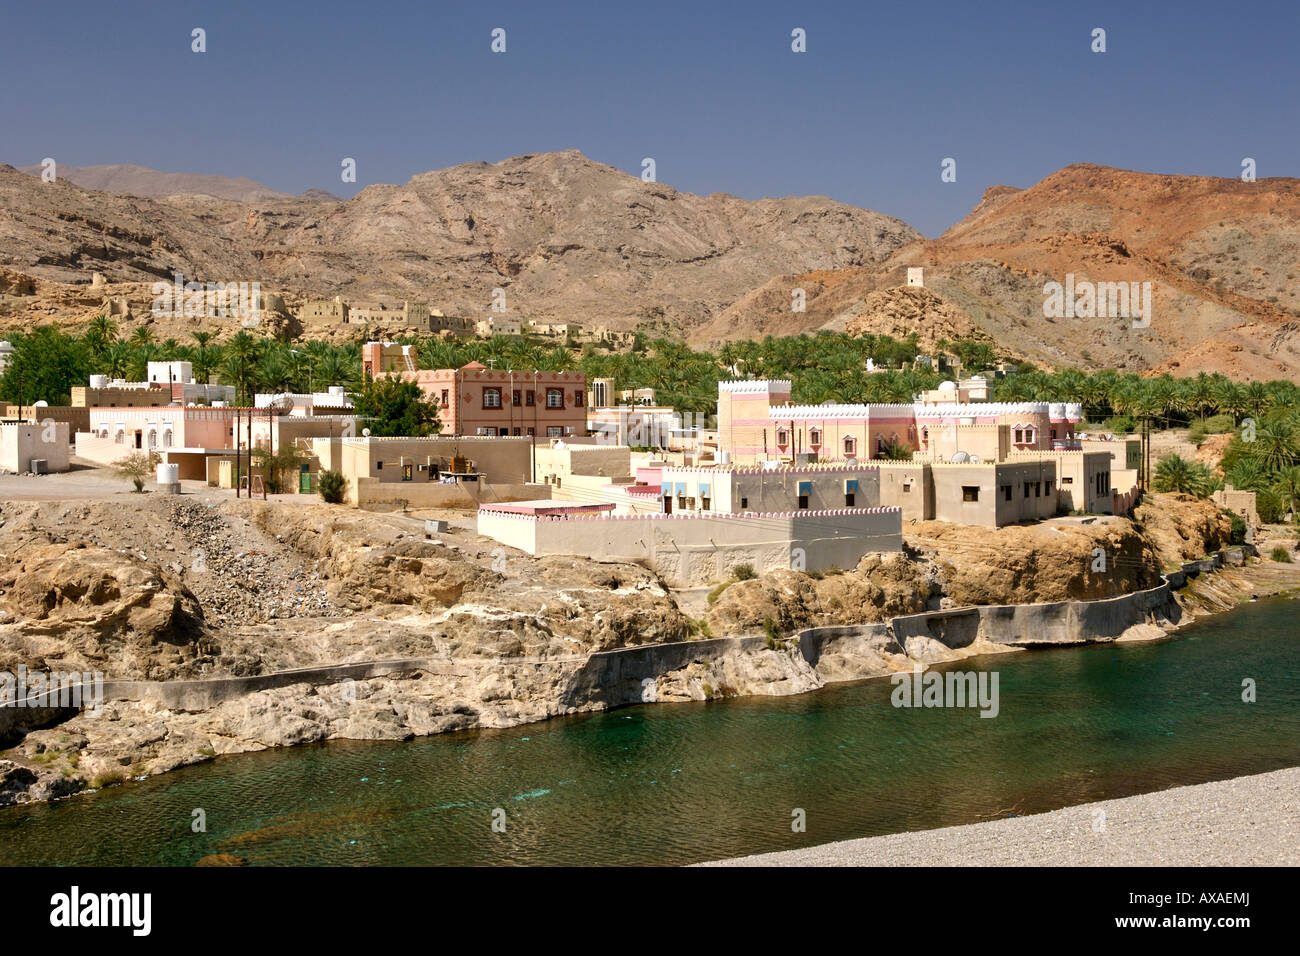 Il villaggio di Fanja in Oman. Foto Stock